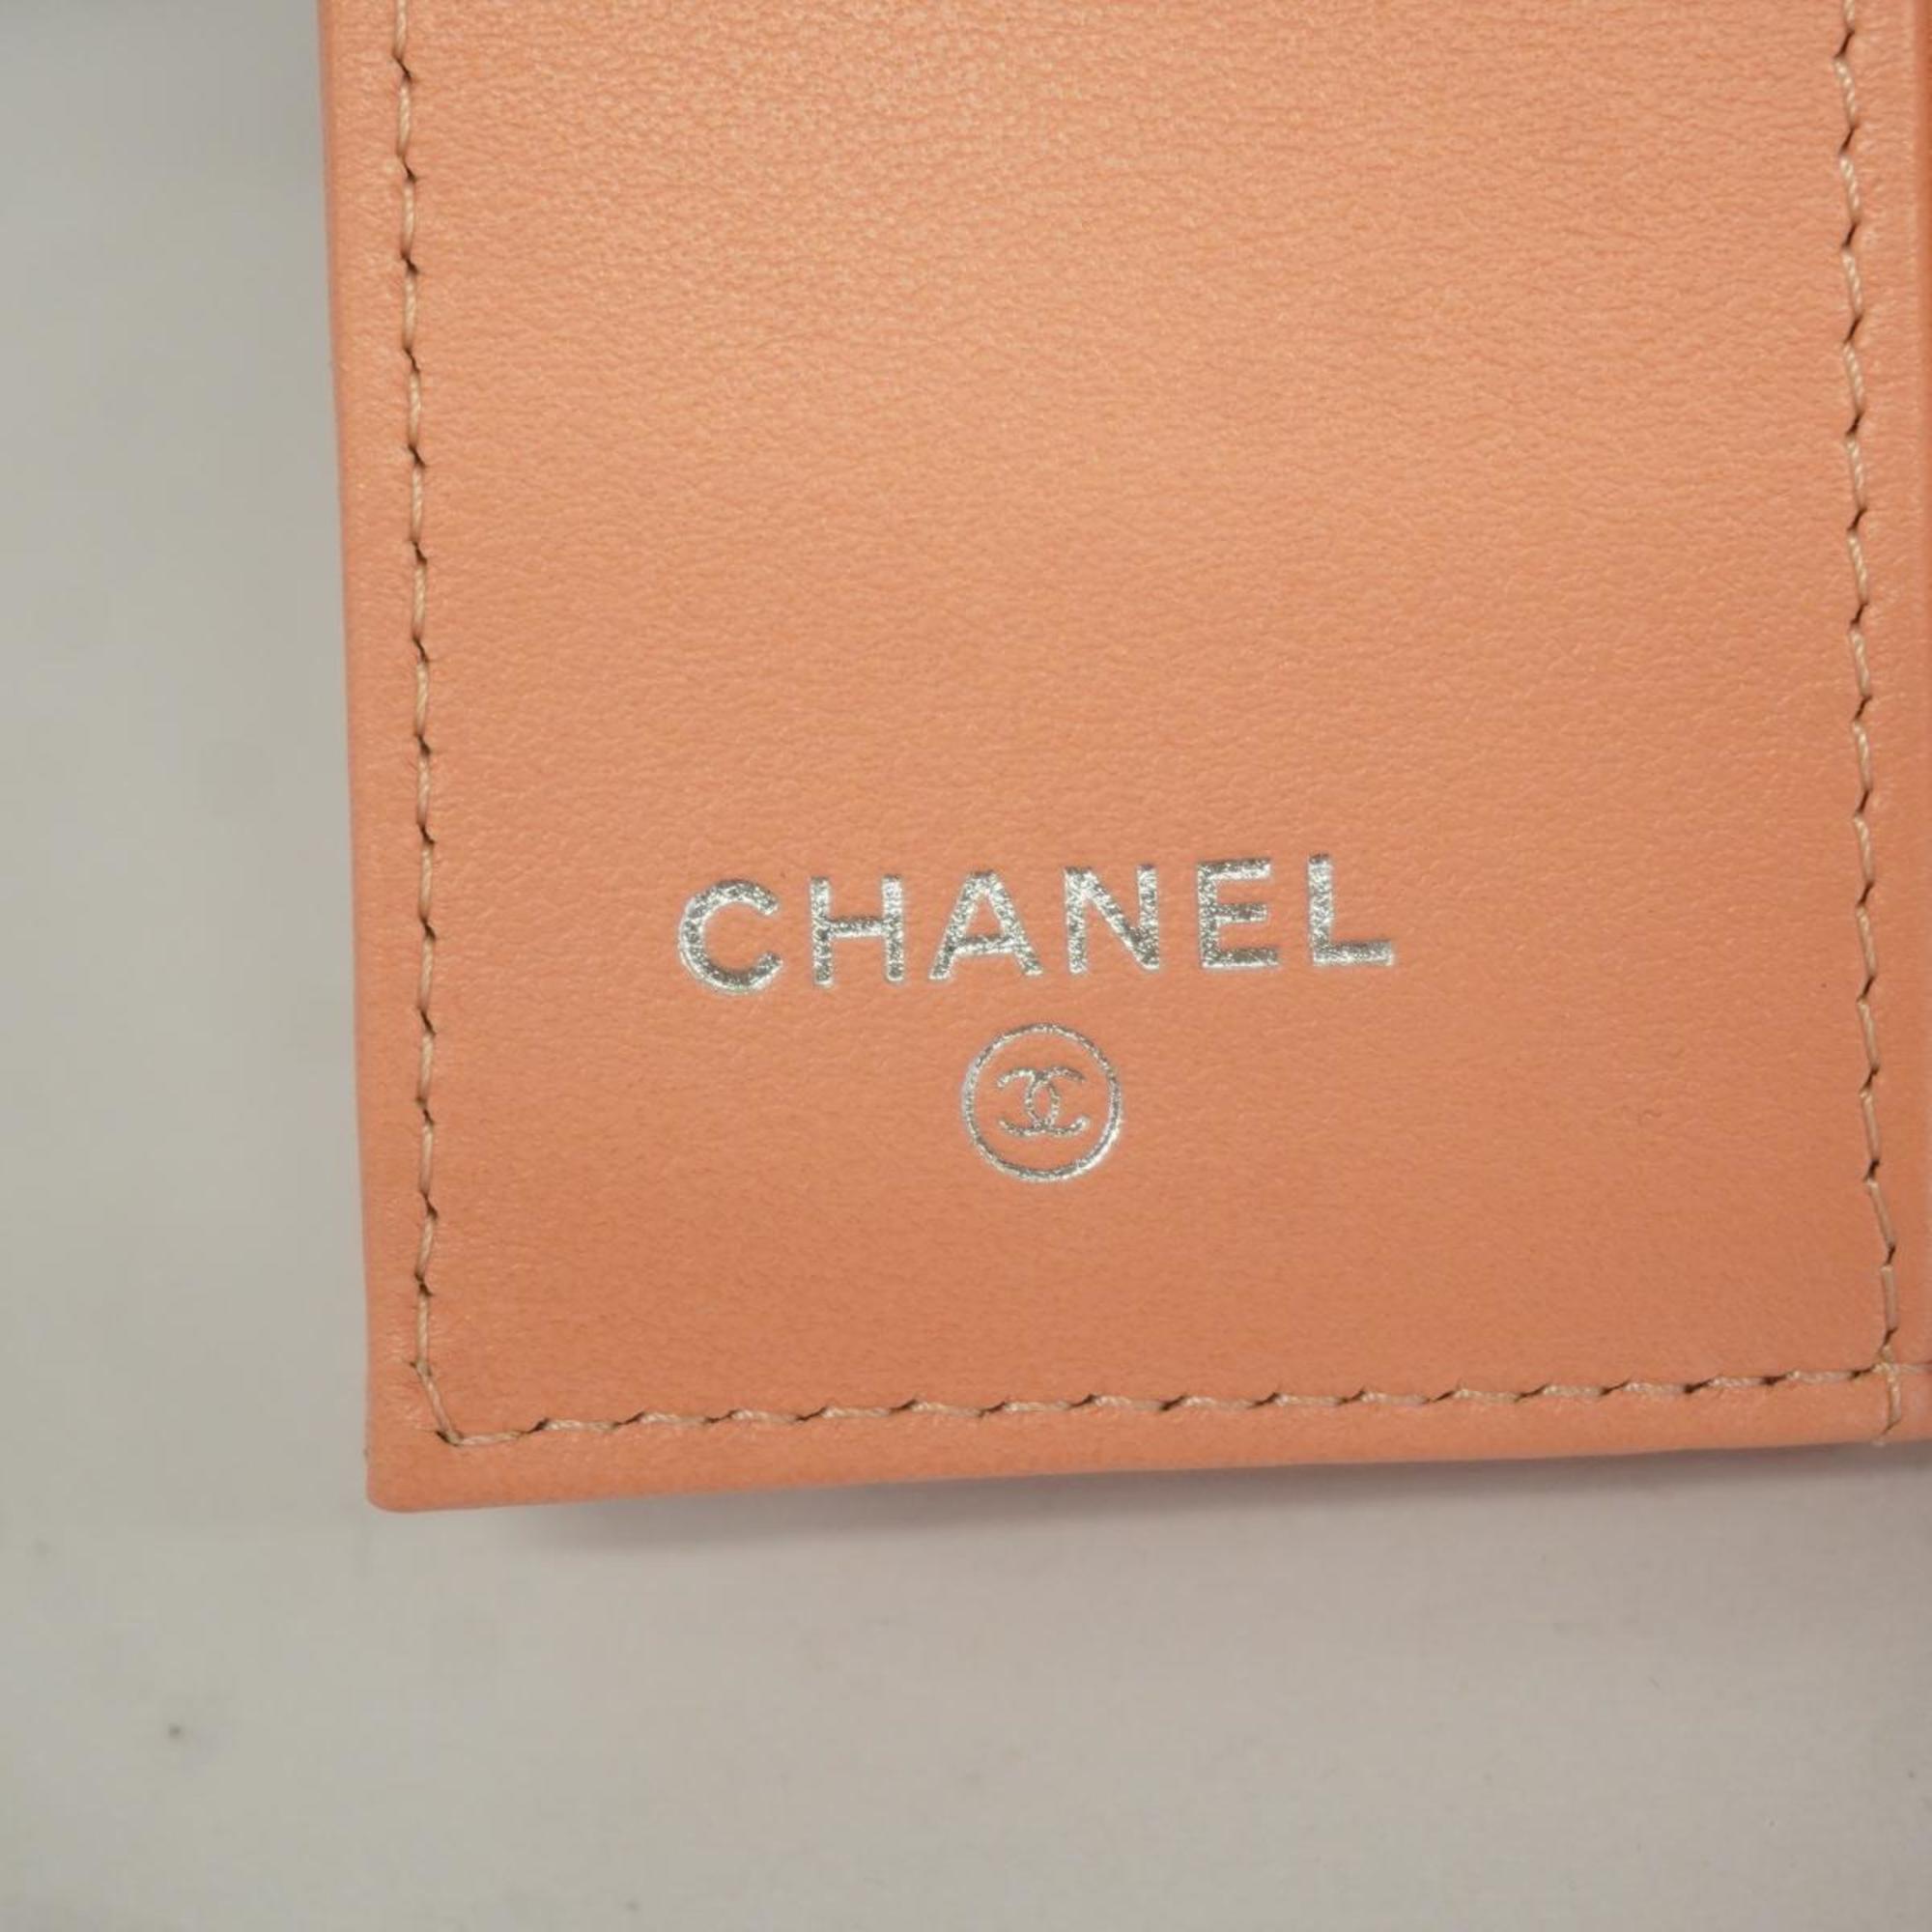 シャネル(Chanel) シャネル 三つ折り財布 カメリア ラムスキン シェルピンク   レディース